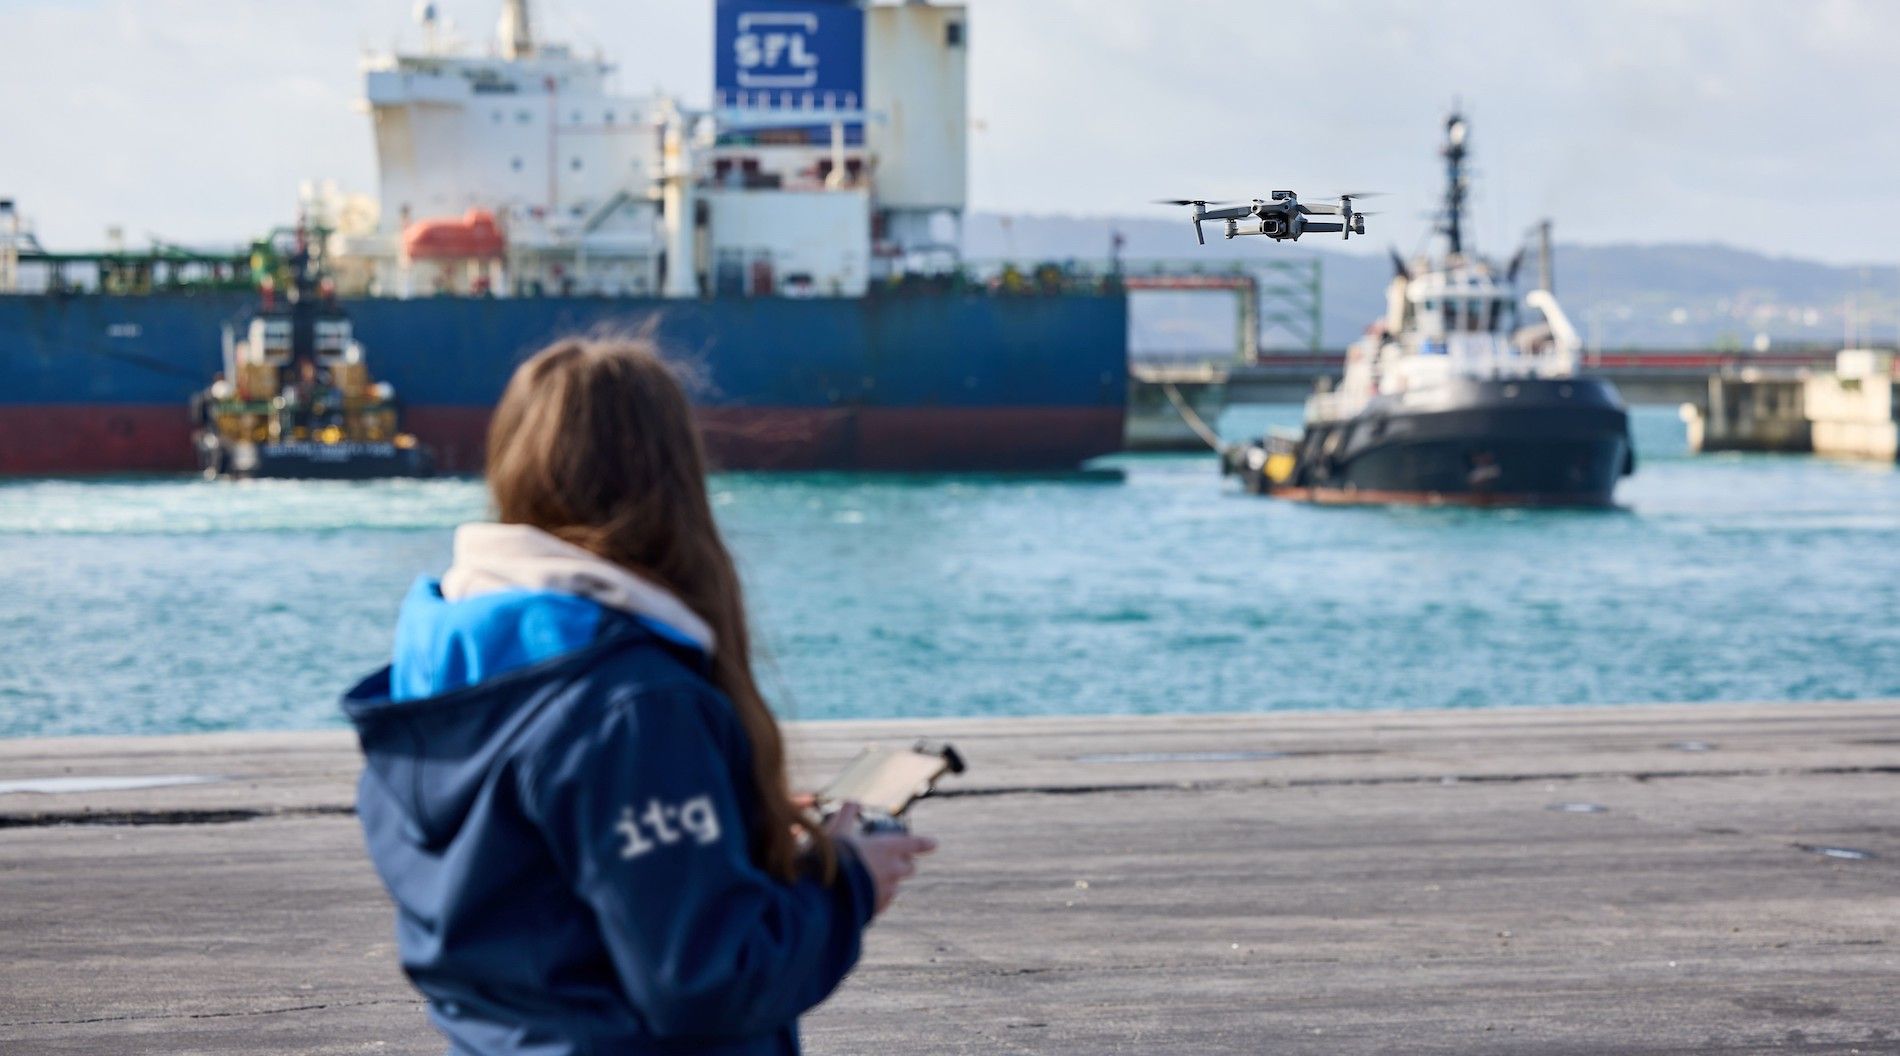 Los drones tienen múltiples aplicaciones prácticas en instalaciones críticas como los puertos.